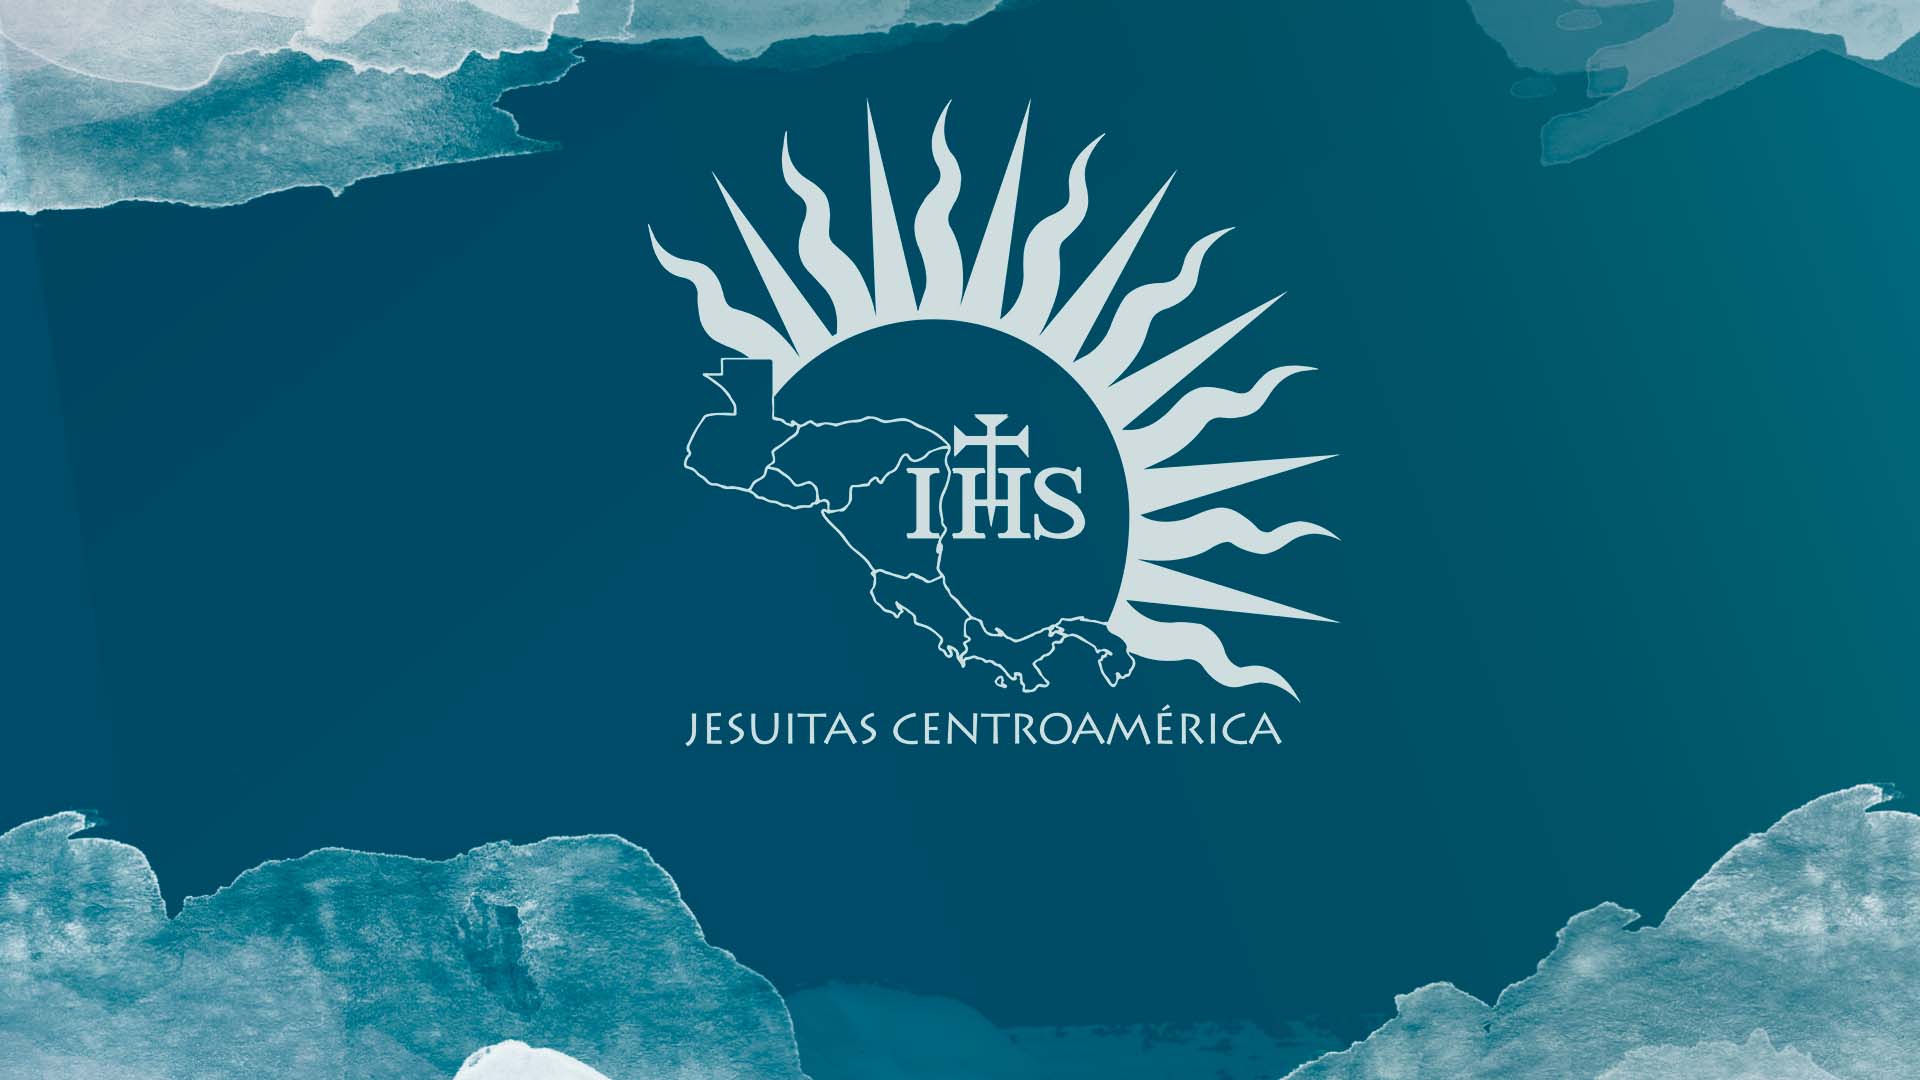 Solidaridad y oración por los jesuitas en Nicaragua